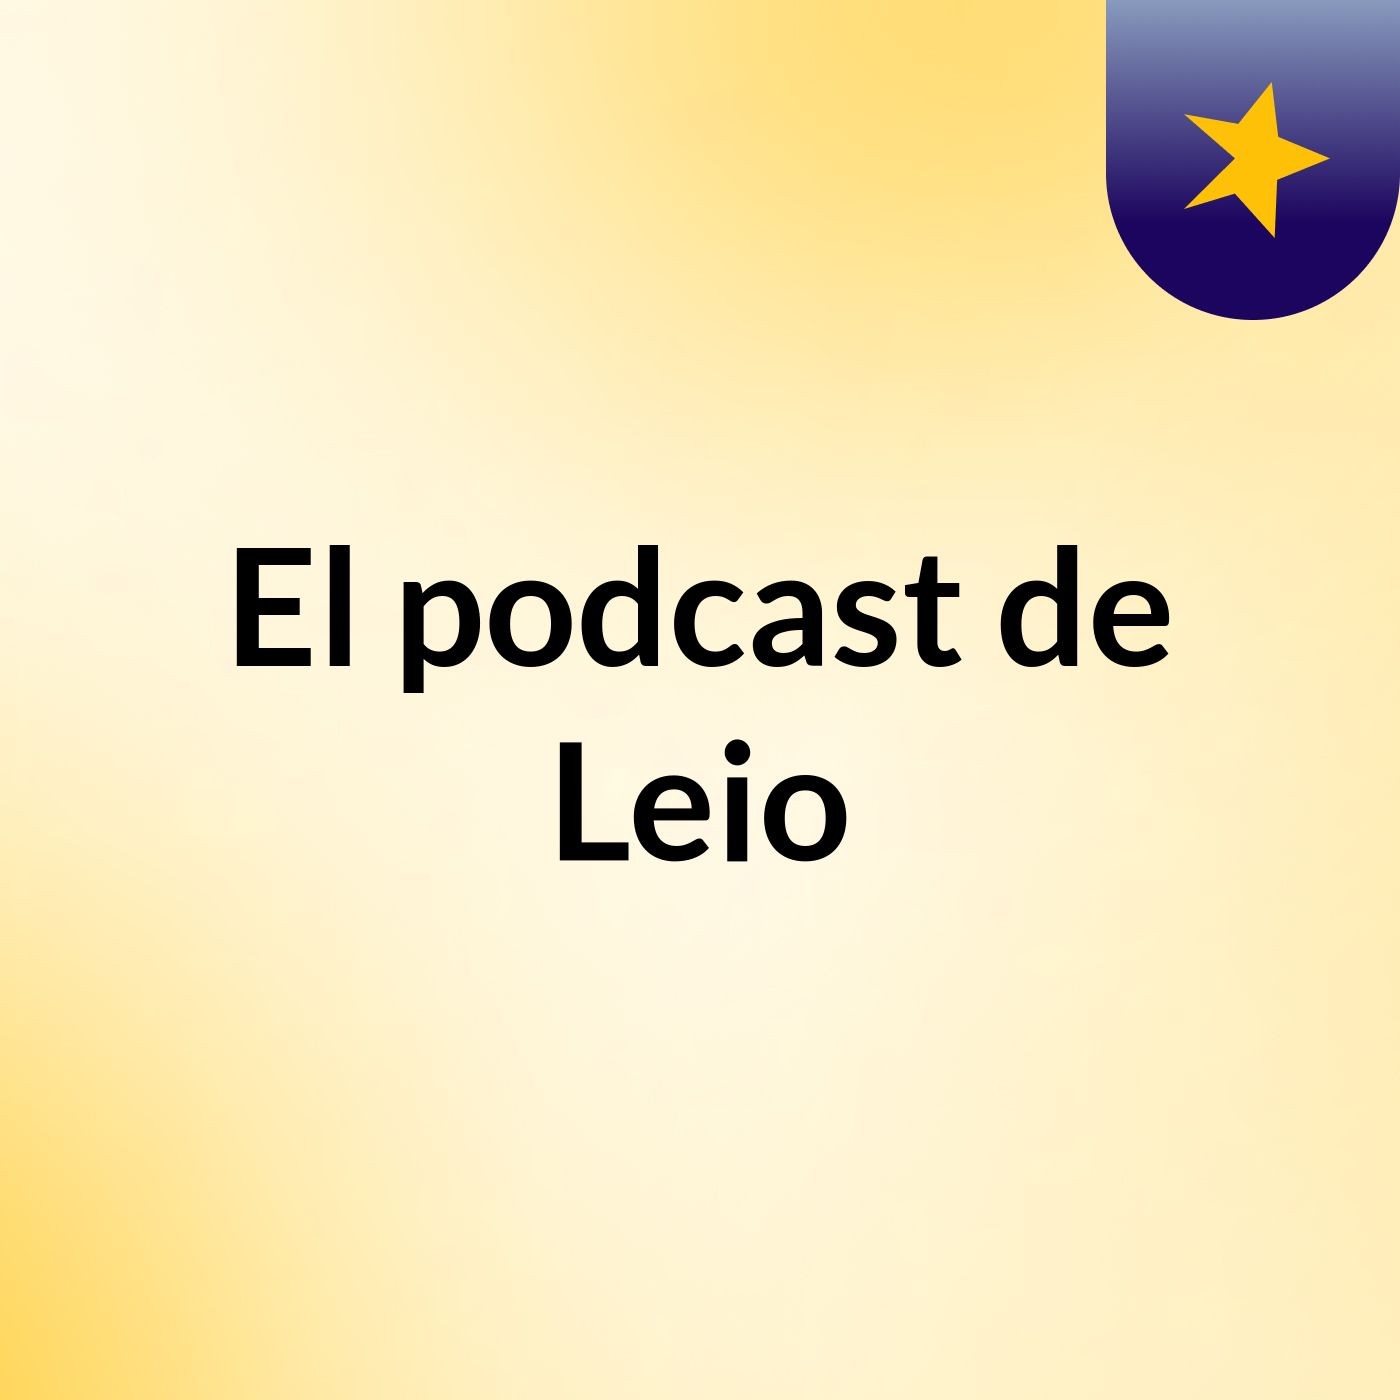 El podcast de Leio